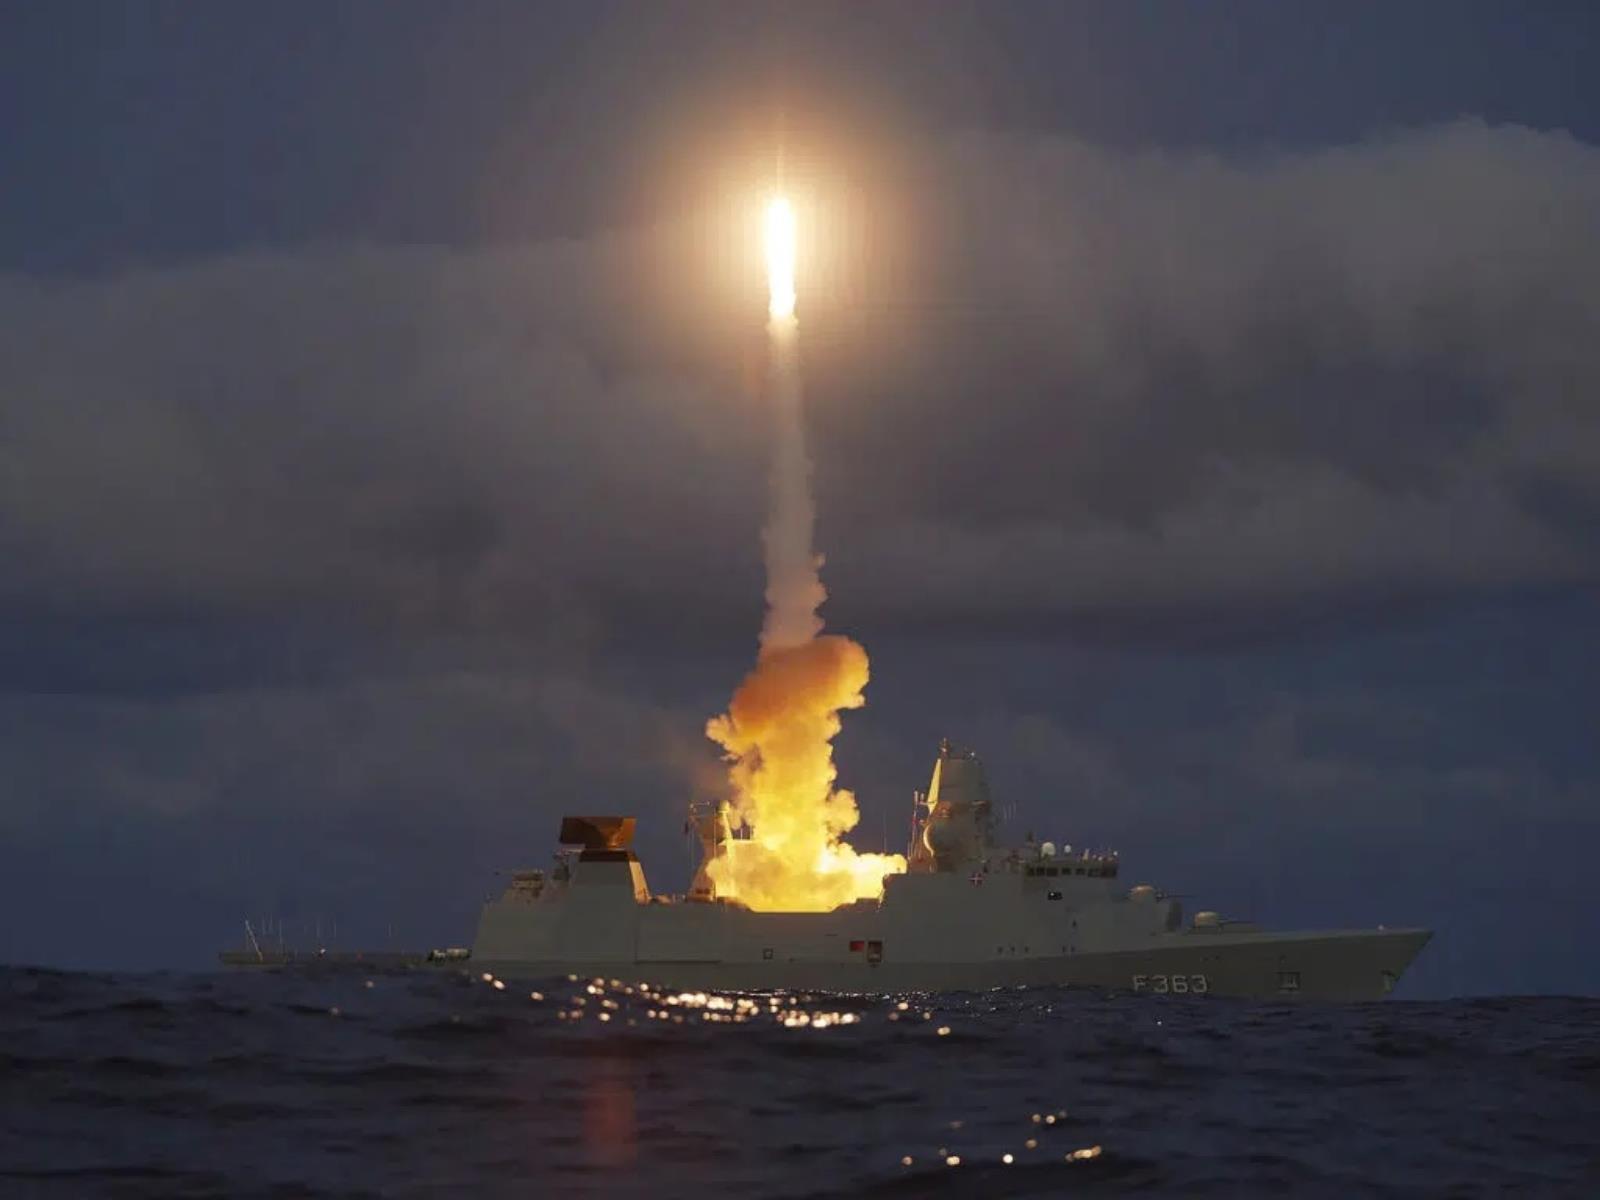 Duńska marynarka przetestowała SM-2. Ten przeciwlotniczy pocisk będzie ważnym elementem ochrony przeciwlotniczej państwa